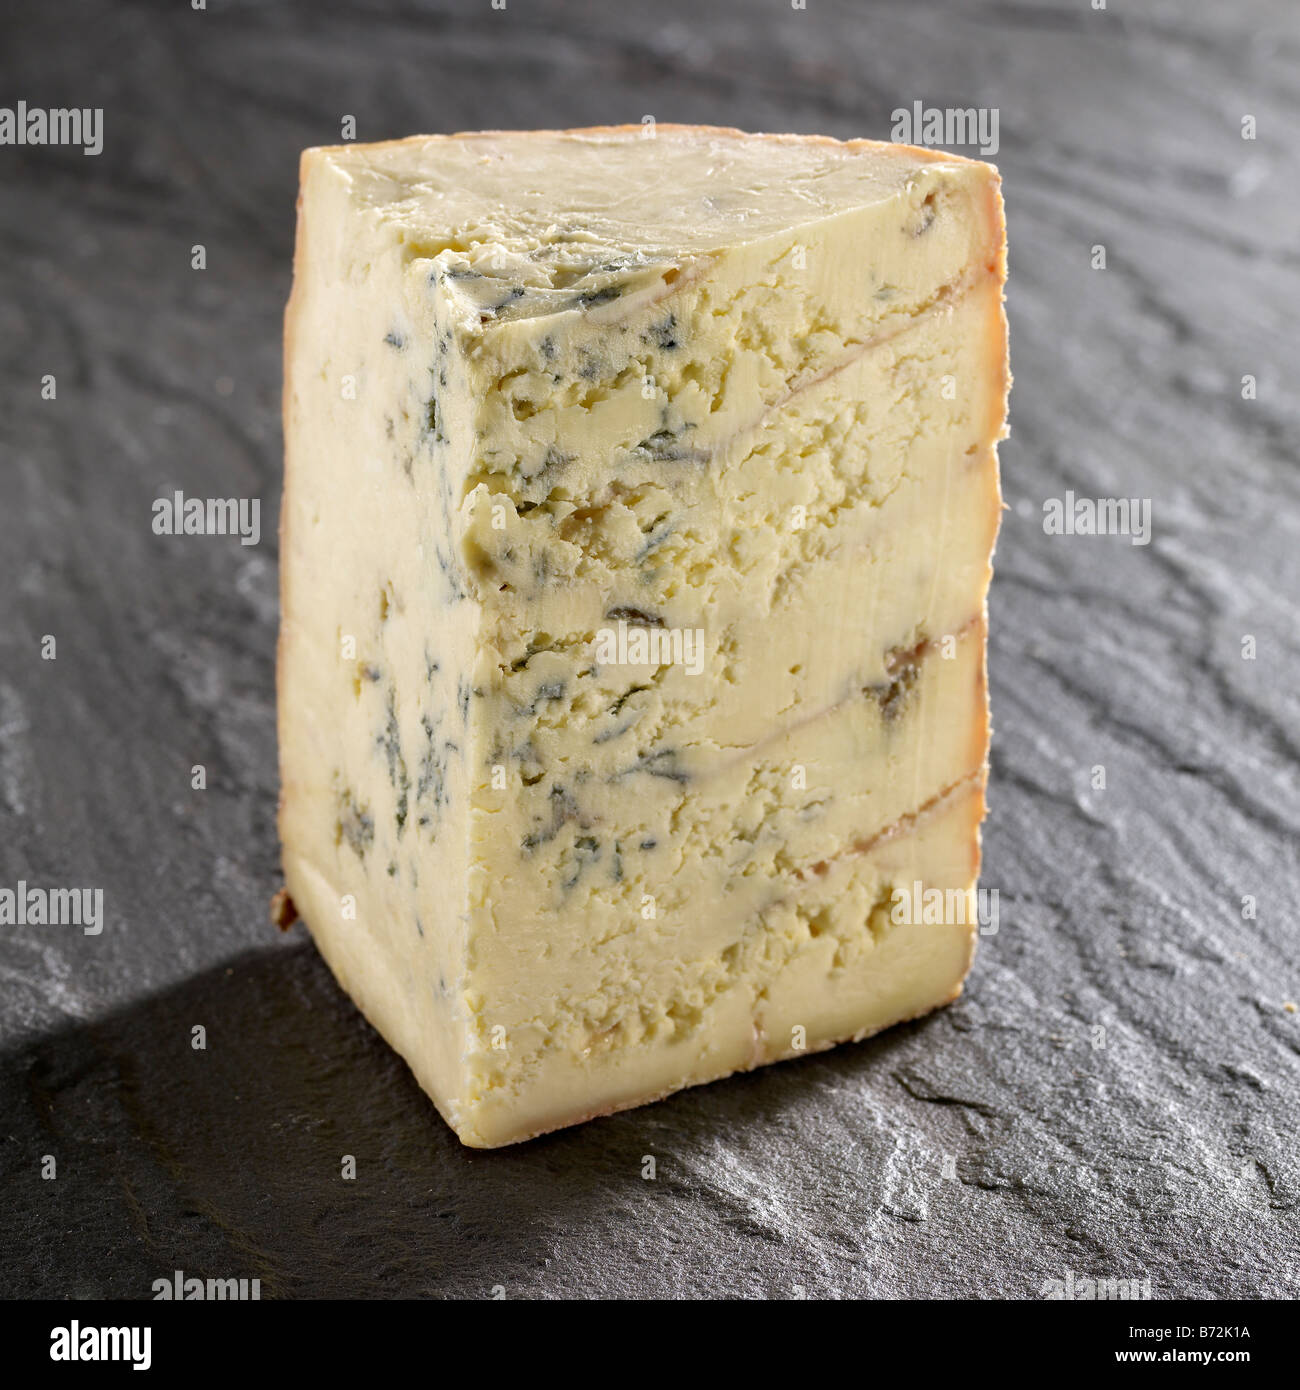 stitchelton cheese wedge on slate Stock Photo